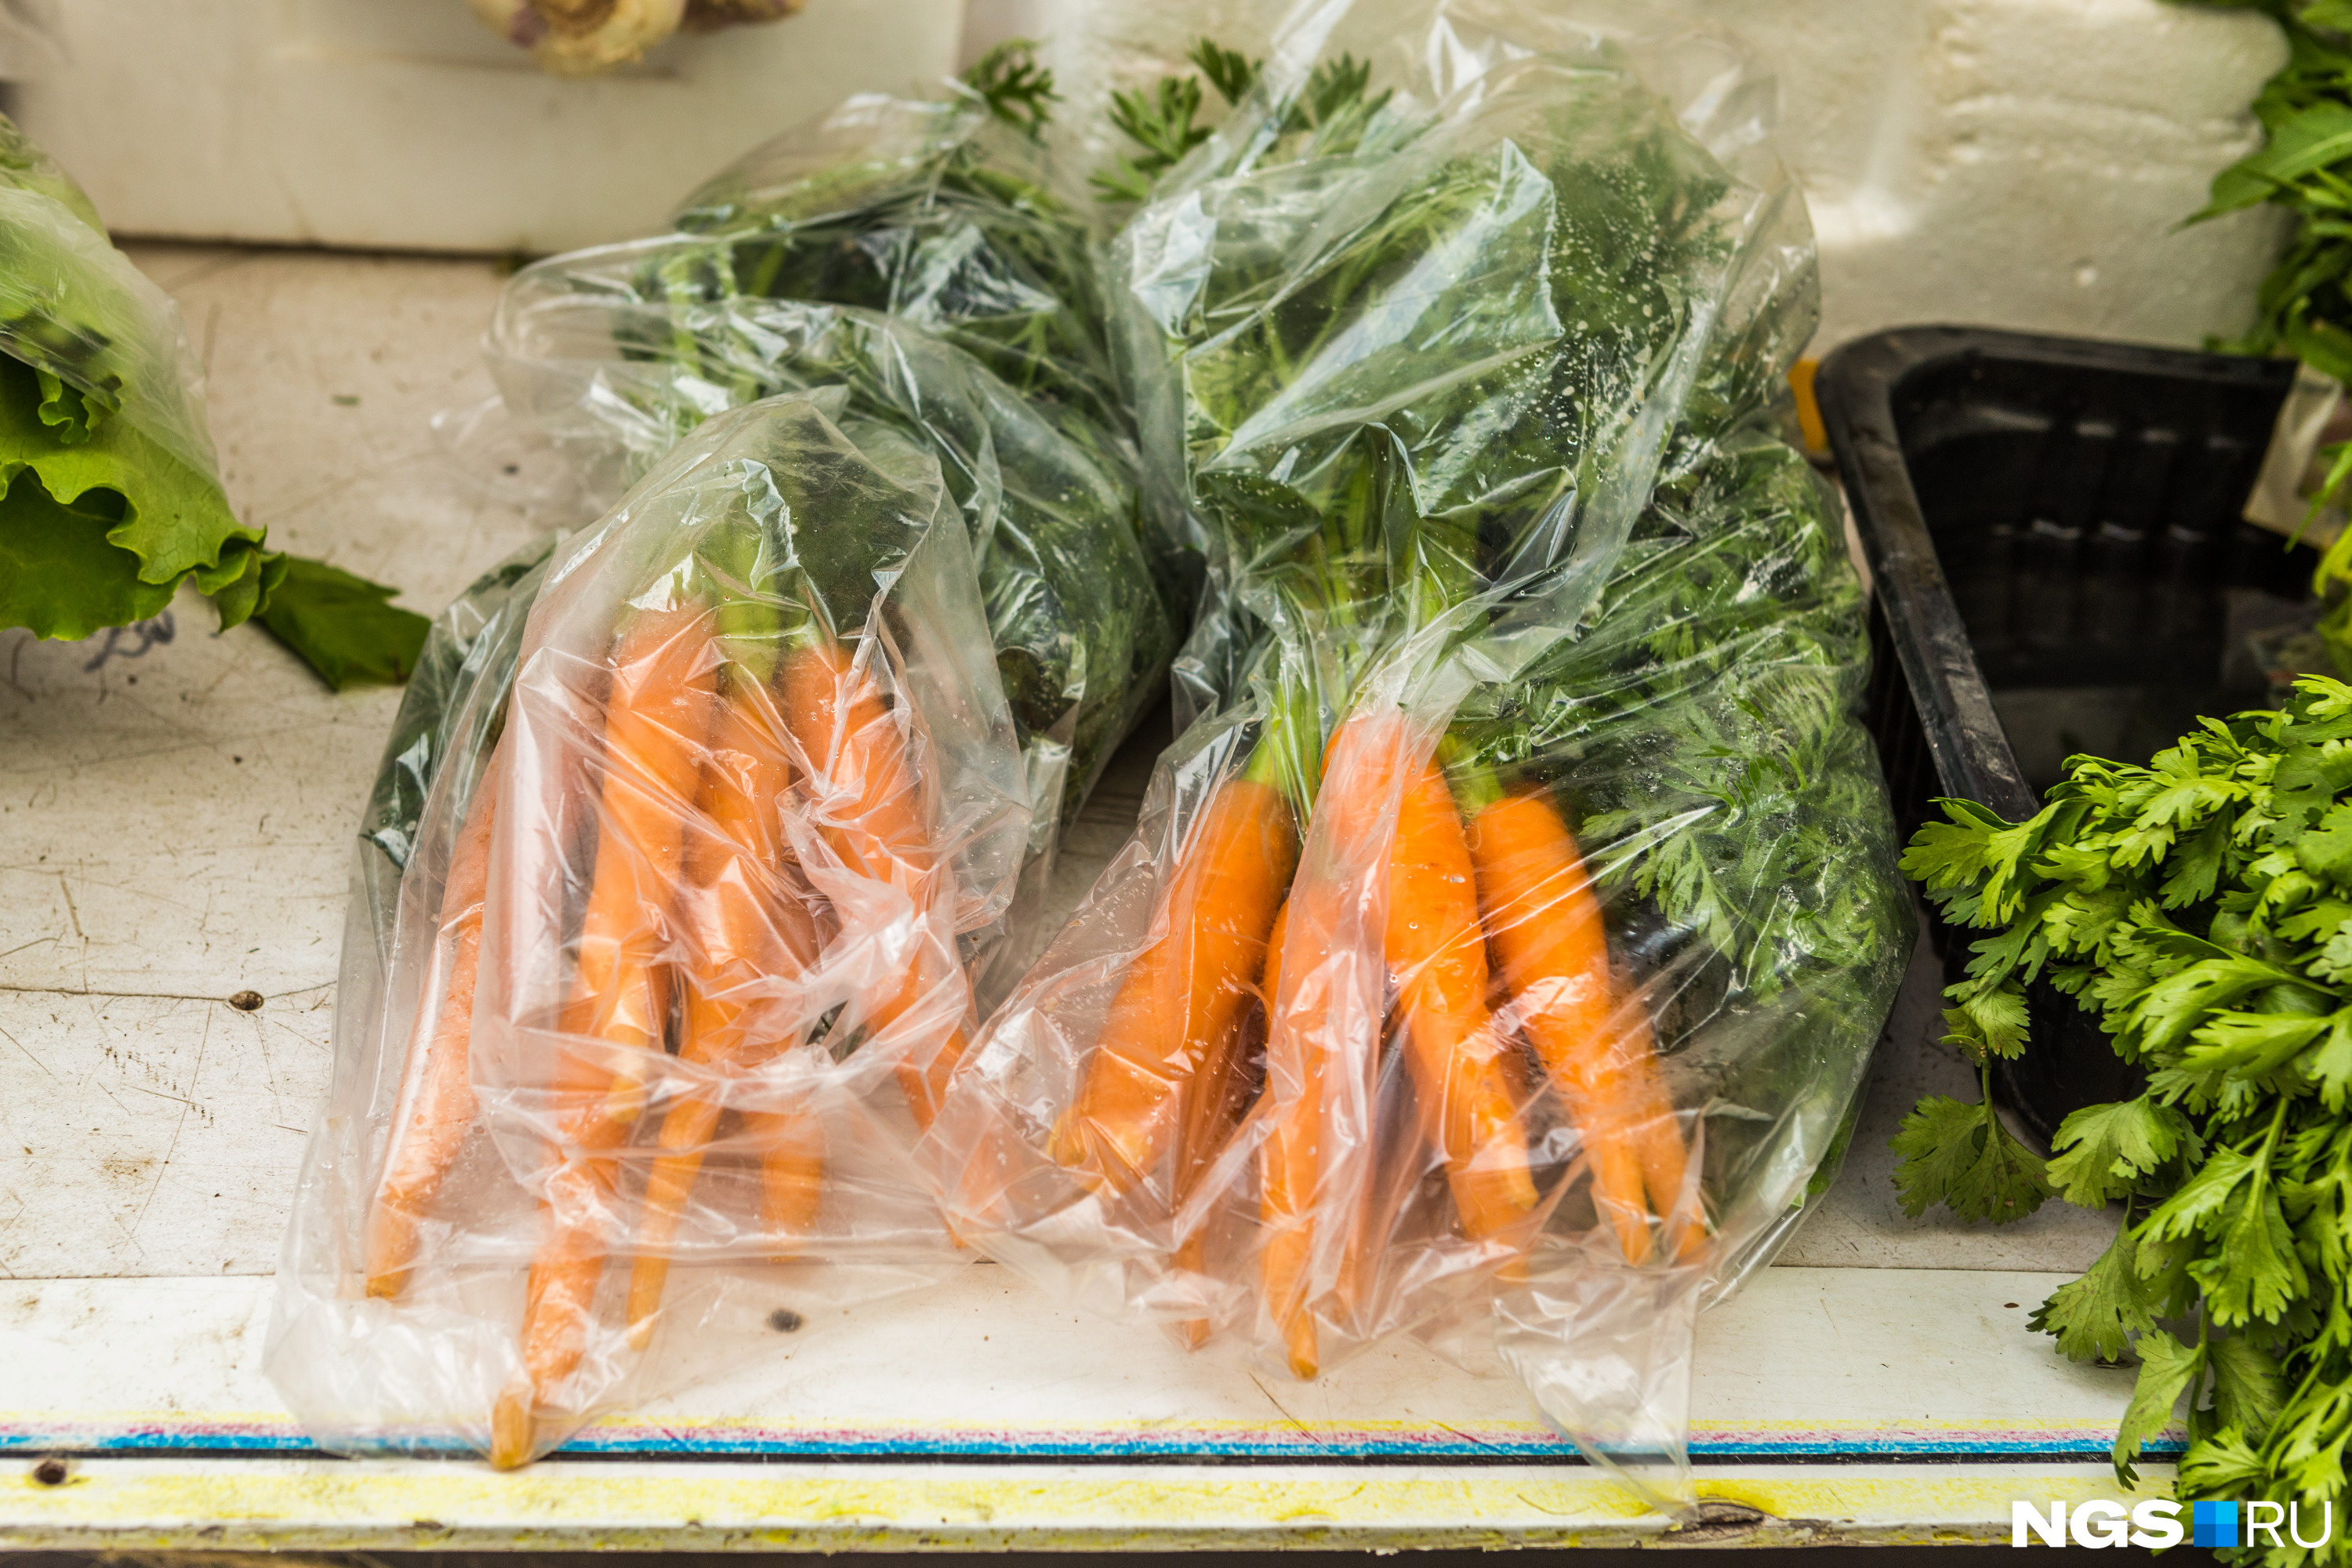 Ботву с моркови перед отправкой на хранение нужно срезать, и верхнюю часть корнеплода тоже